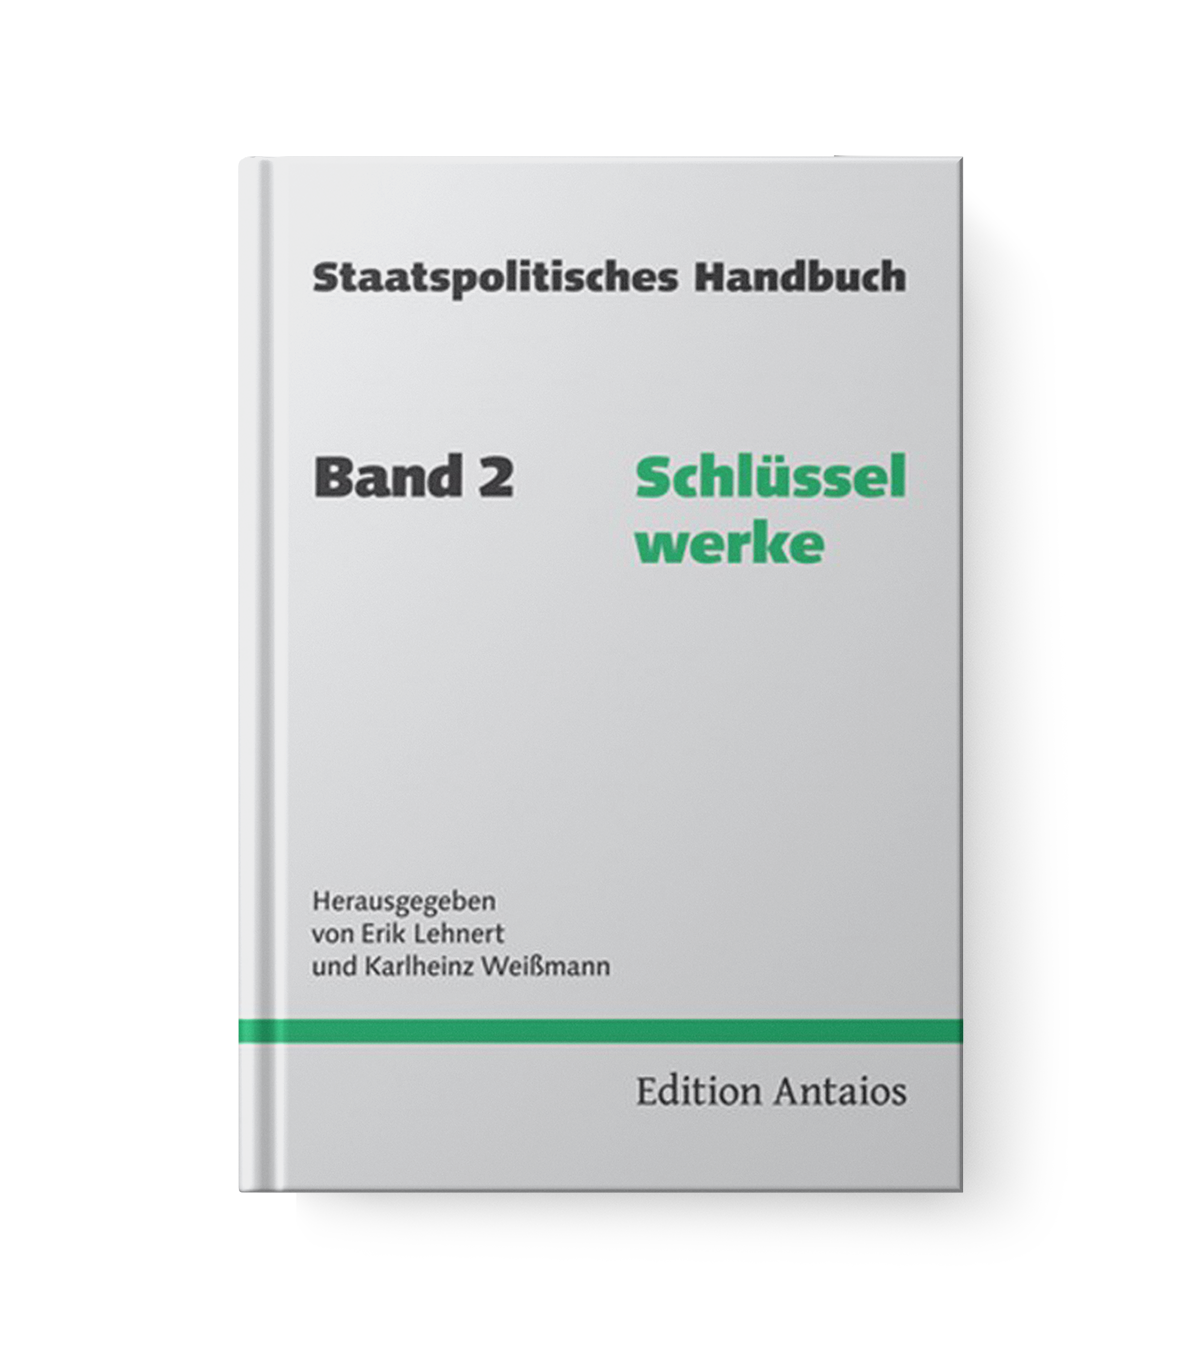 Staatspolitisches Handbuch (Band 2): Schlüsselwerke